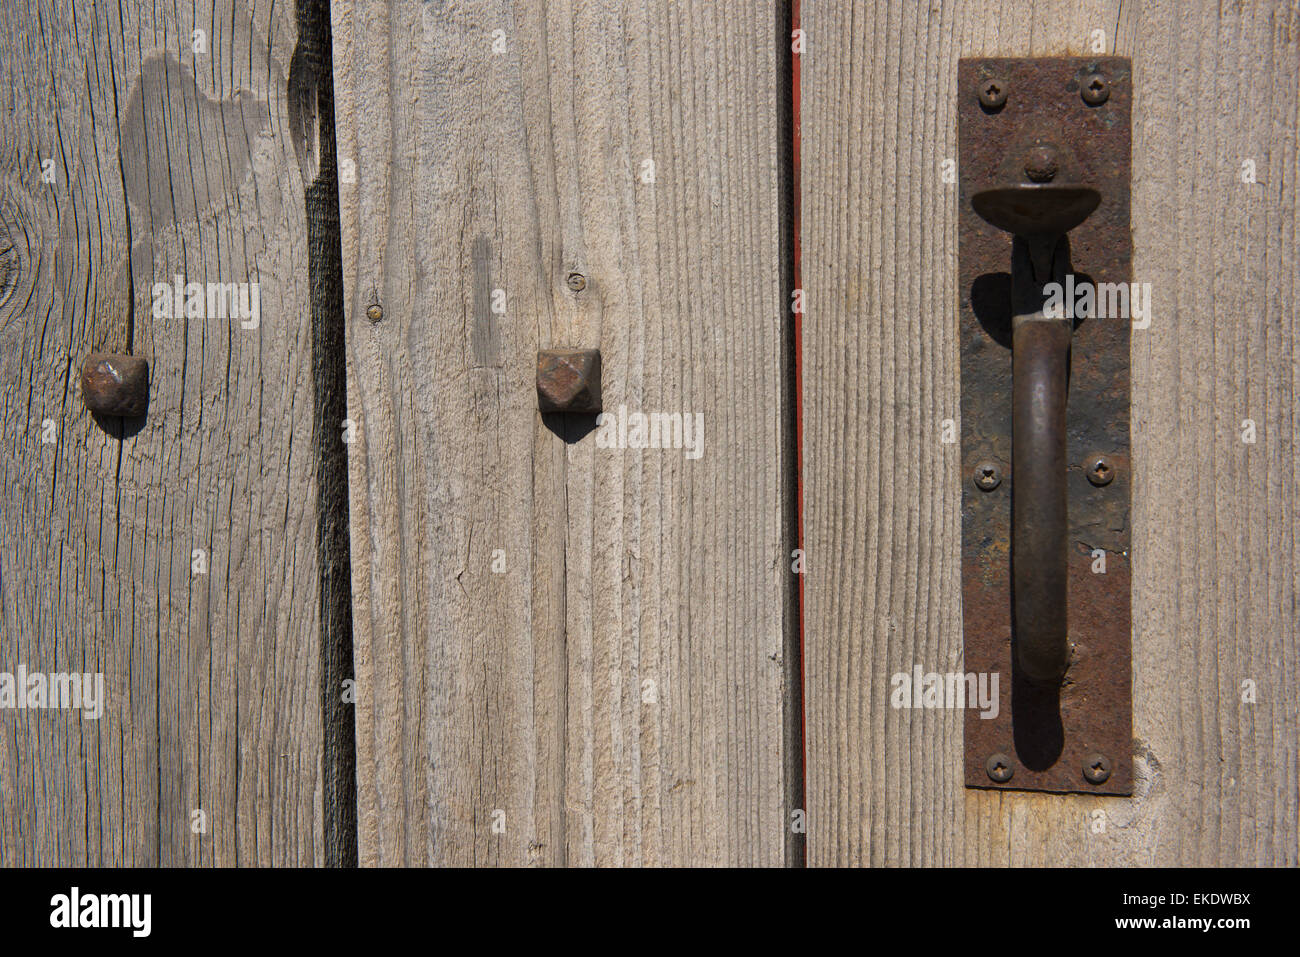 Latch on old wooden door Stock Photo